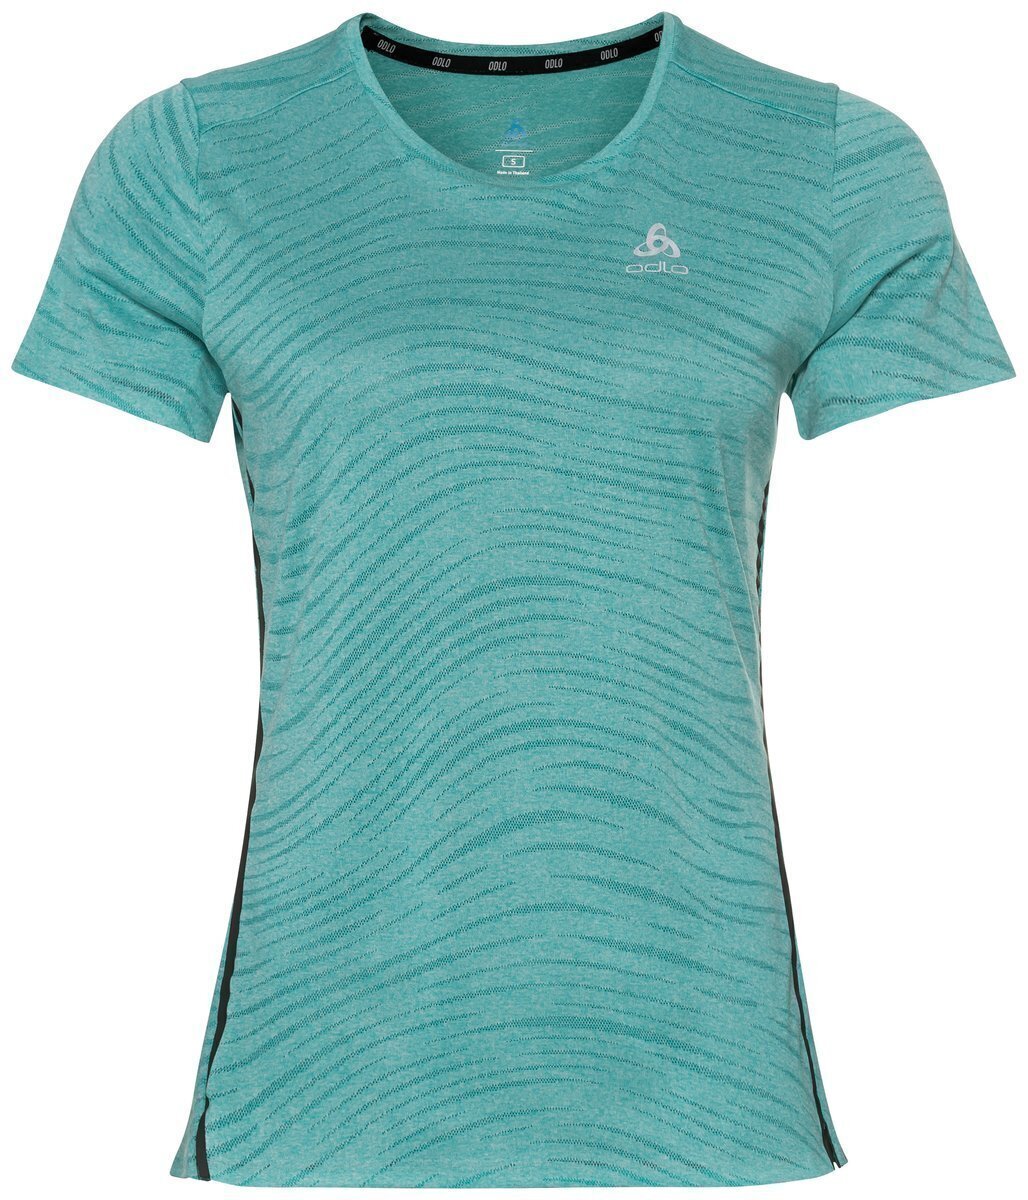 Bežecké tričko s krátkym rukávom
 Odlo Zeroweight Engineered Chill-Tec T-Shirt Jaded Melange S Bežecké tričko s krátkym rukávom